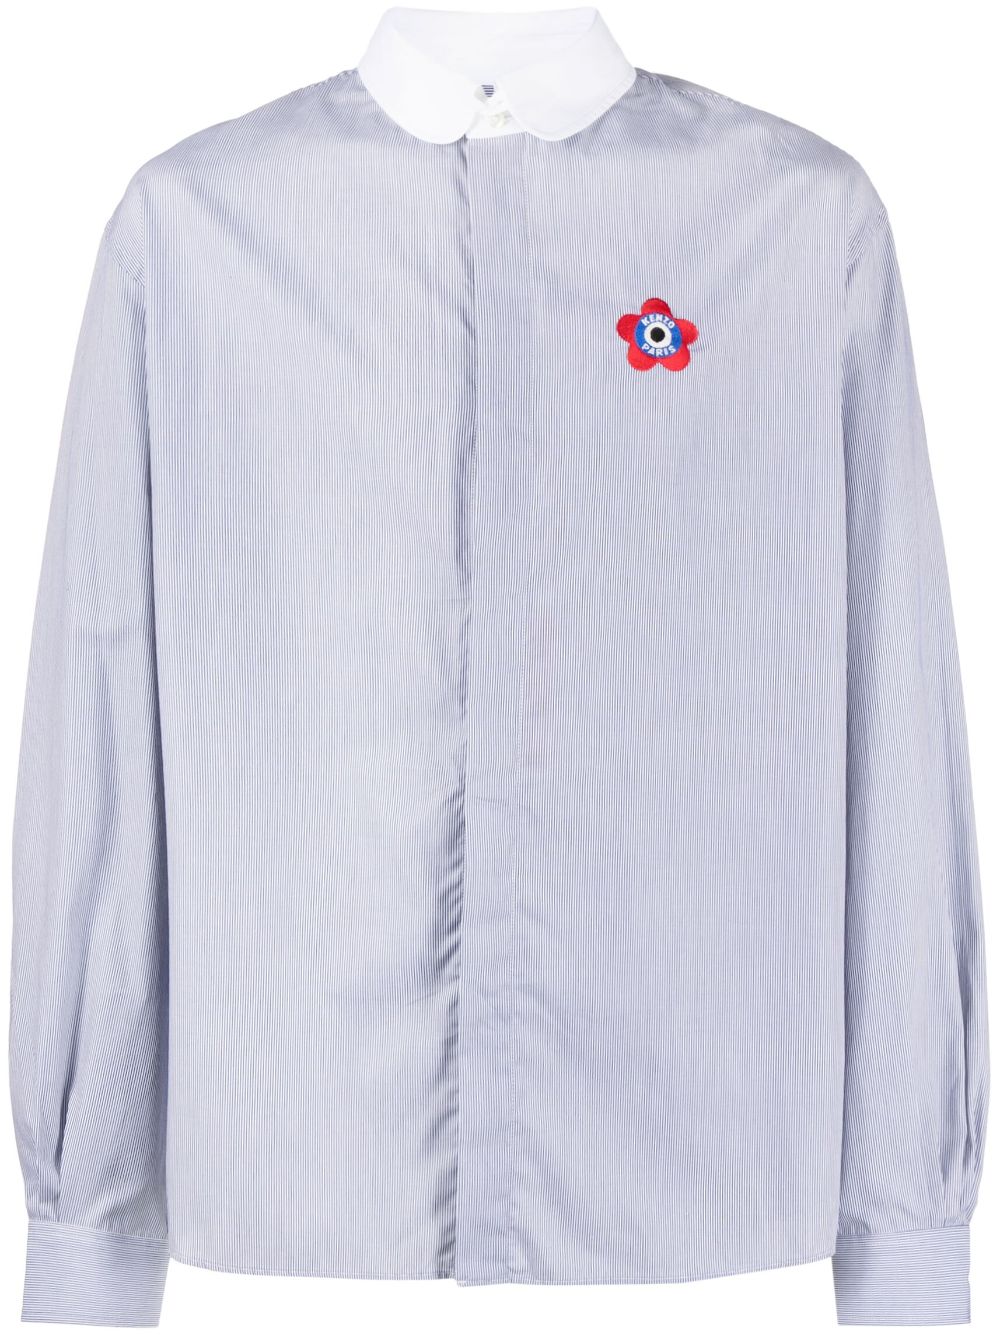 Image 1 of Kenzo camisa con motivo de rayas y logo bordado